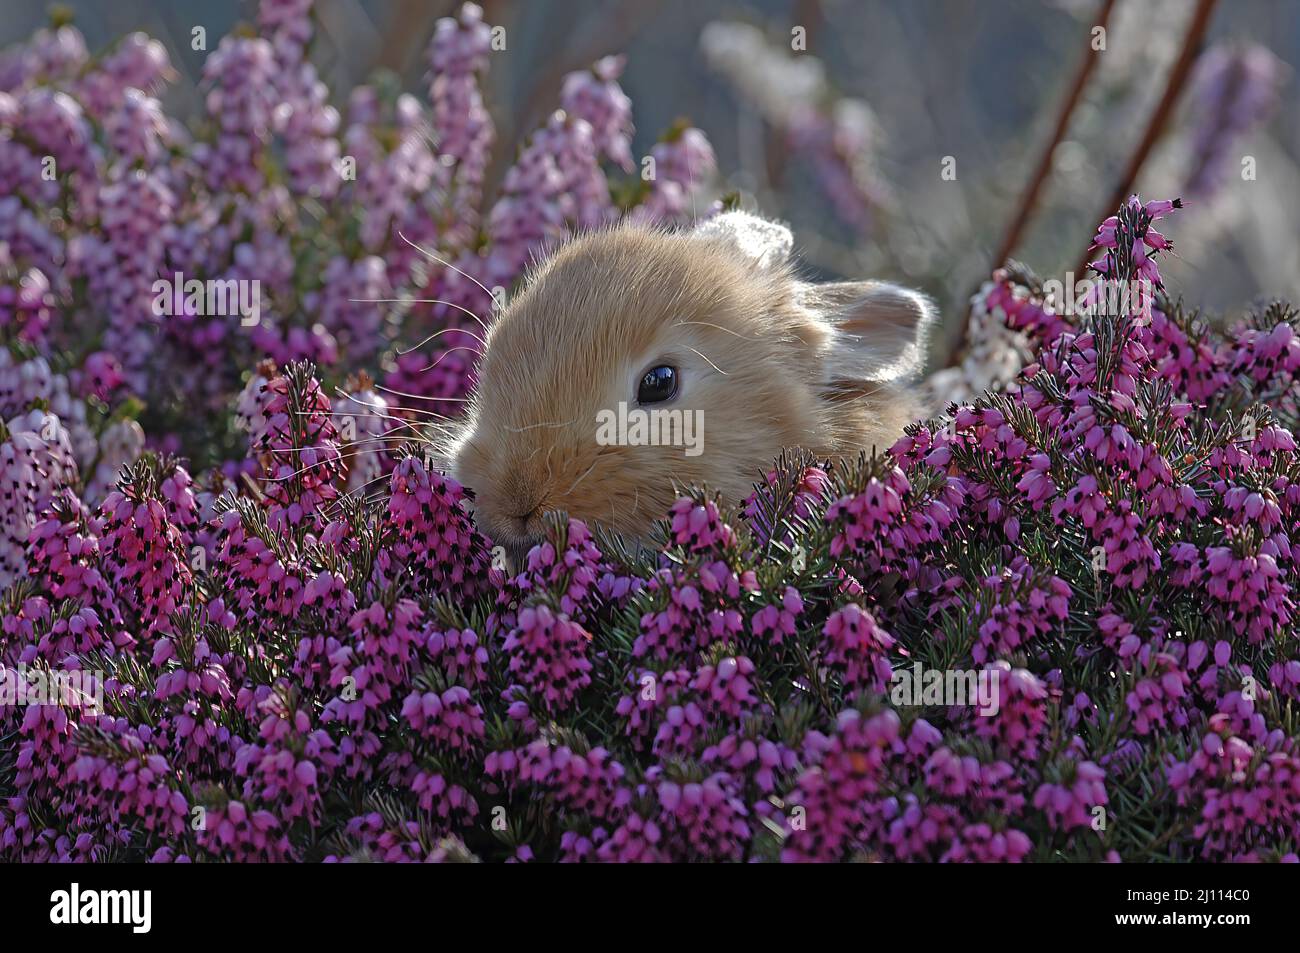 Kleiner brauner Hase versteckt sich in einer blühenden Heidekraut Pflanze Stock Photo